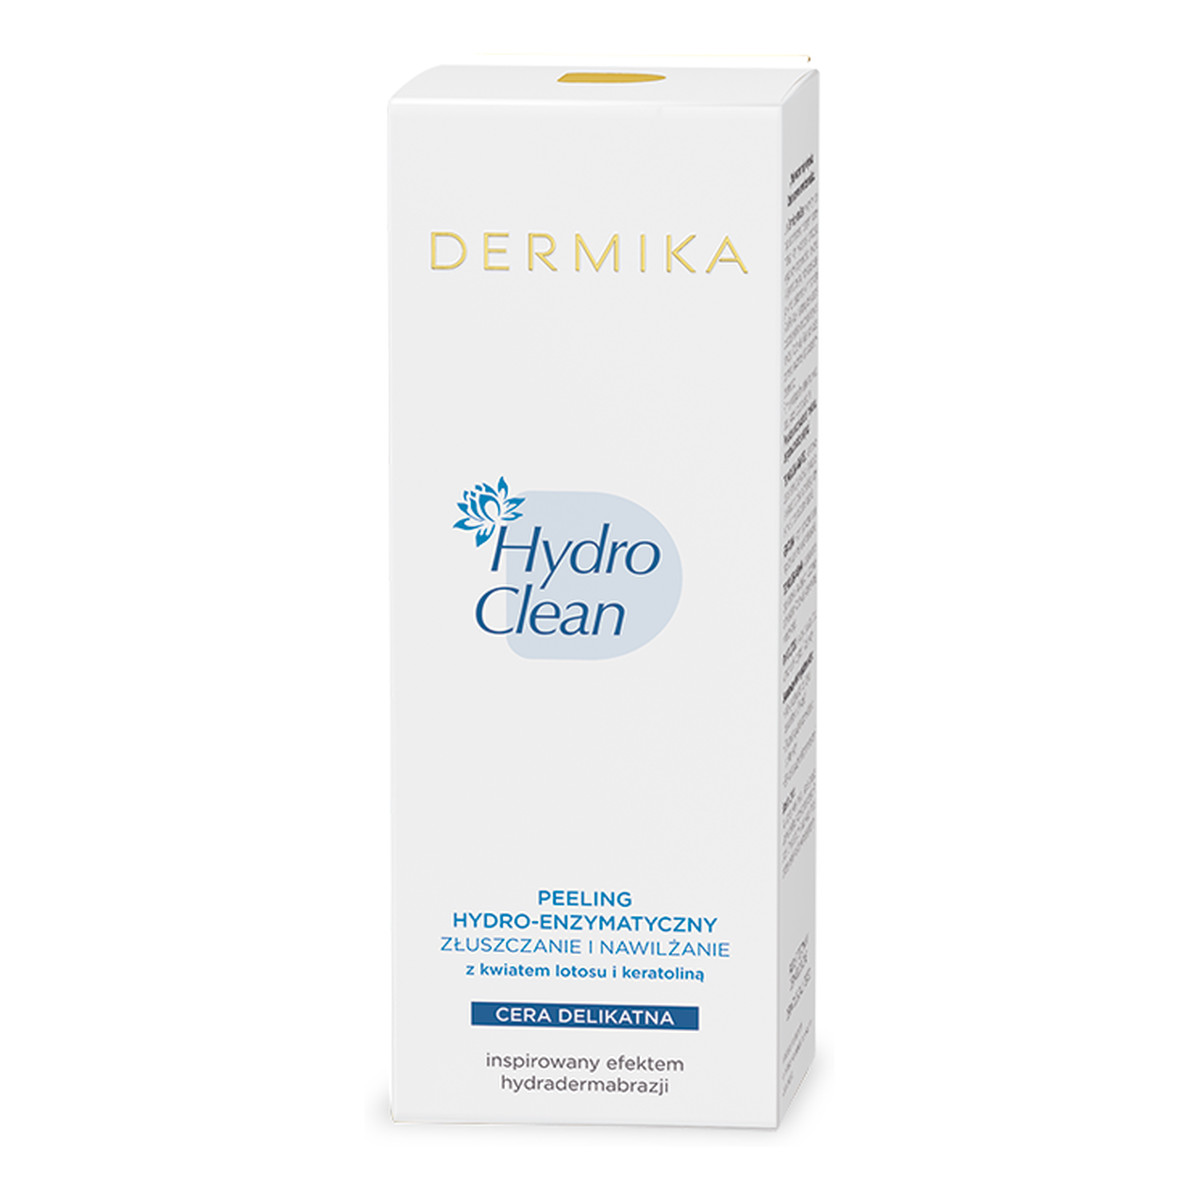 Dermika Hydro Clean Peeling Hydro - Enzymatyczny 50ml